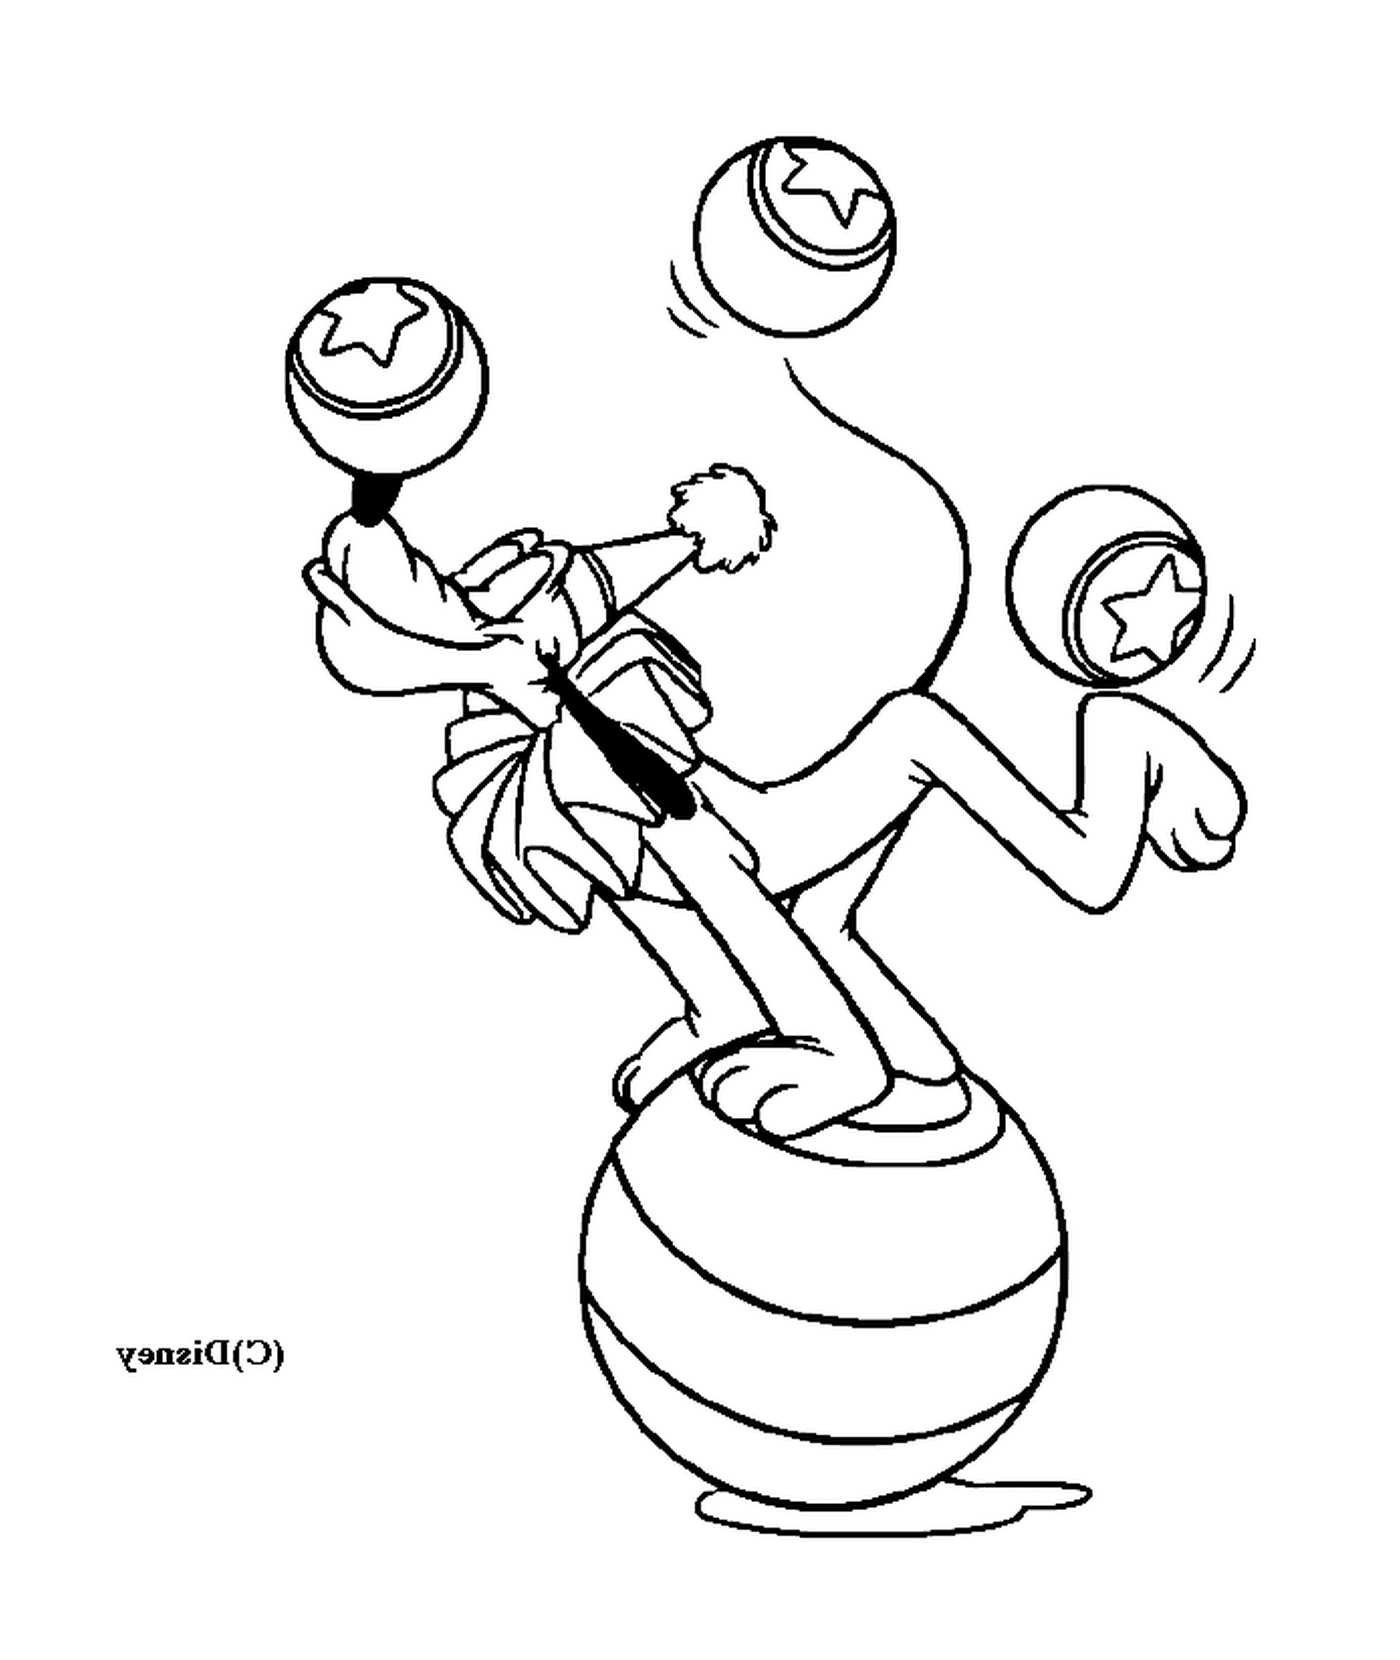   Personne jonglant sur une boule 